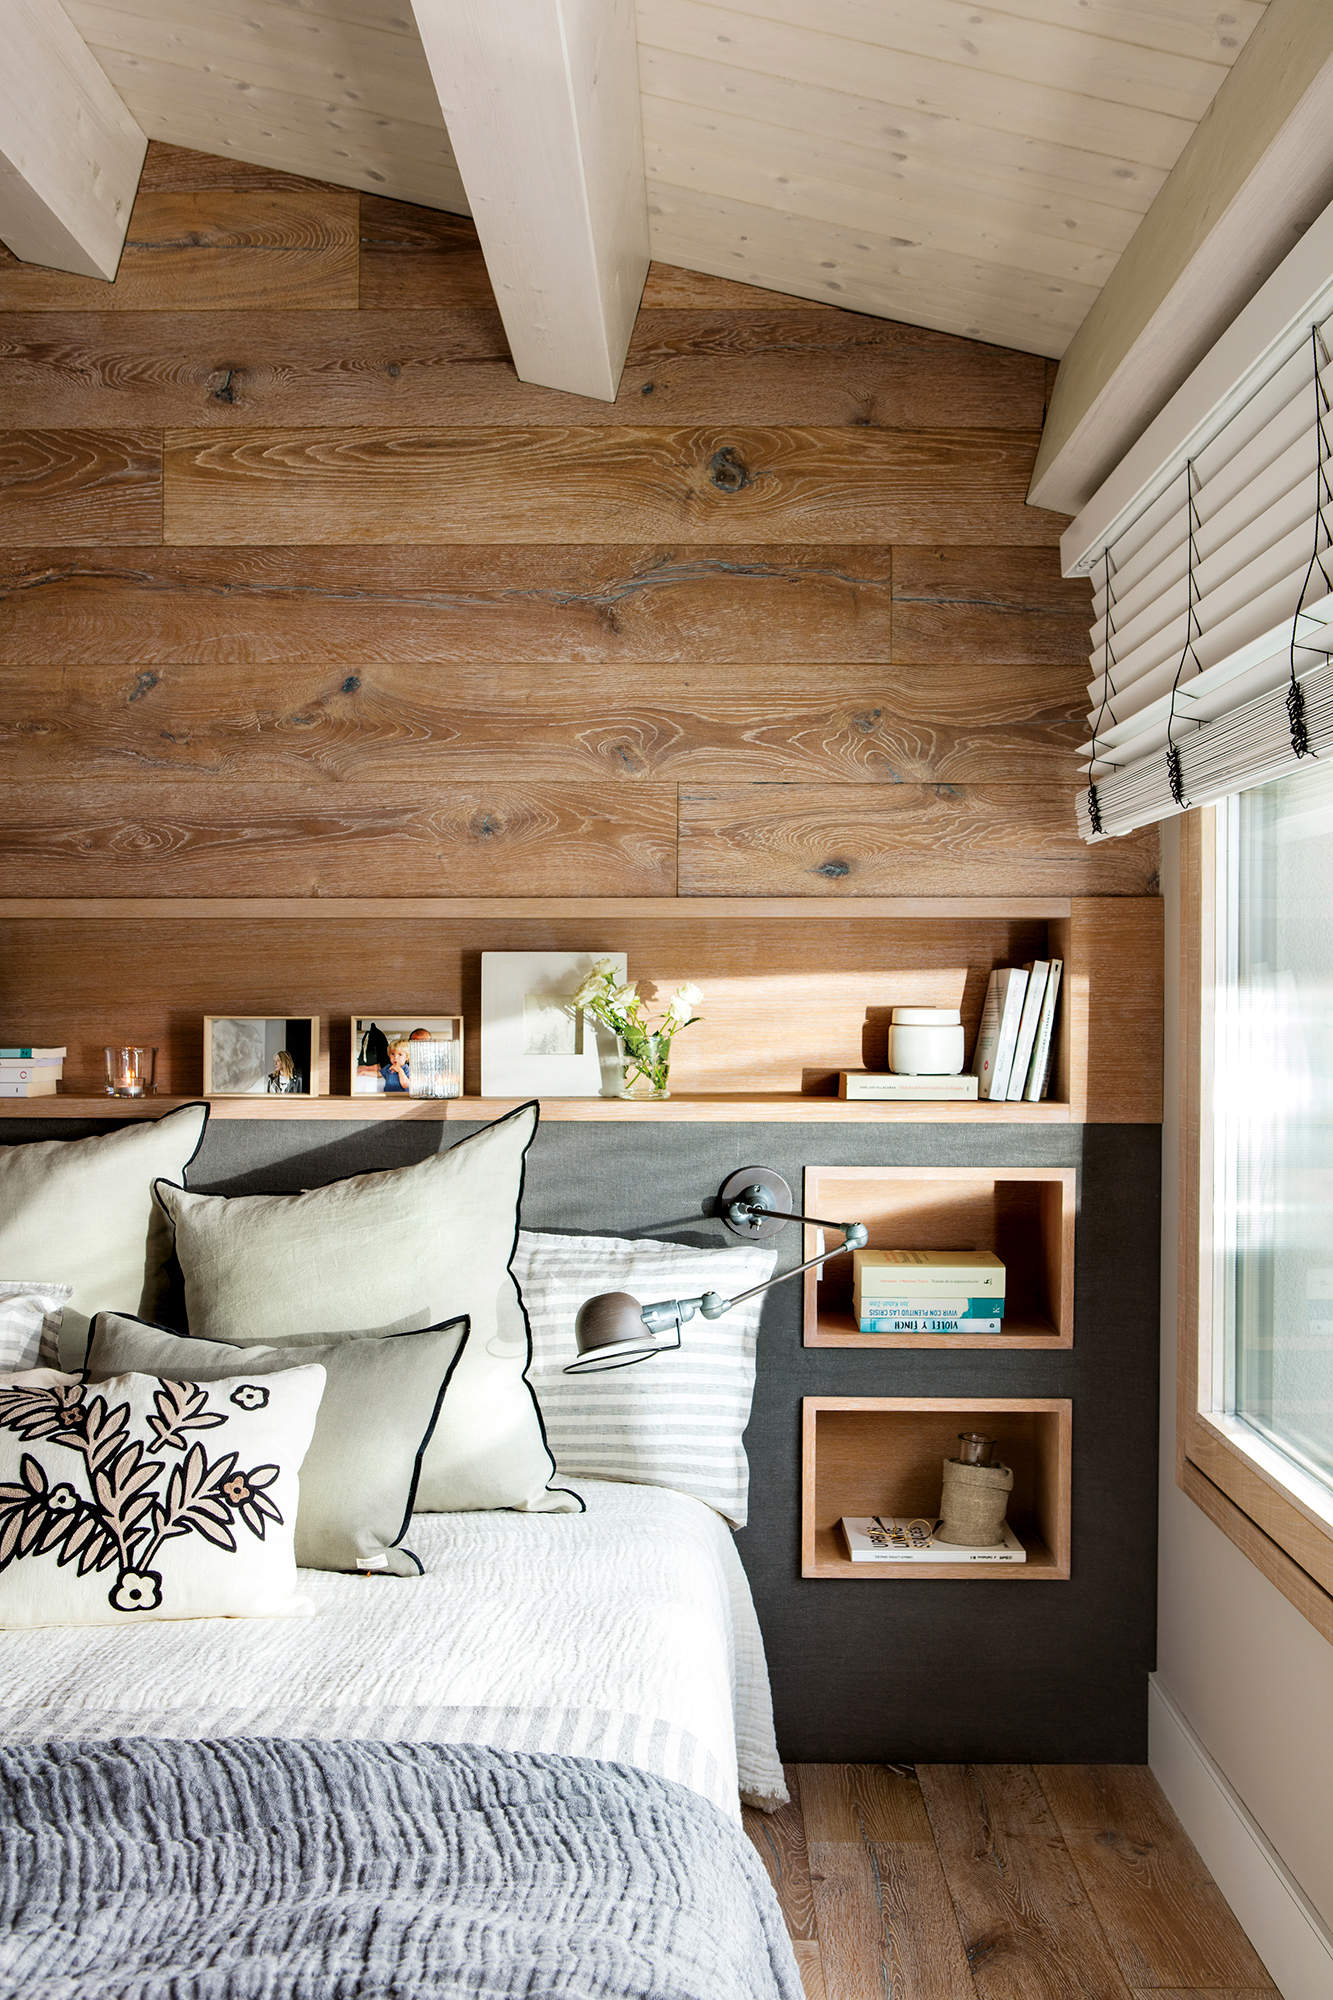 Dormitorio con cabecero forrado de madera y tela que integra estantería y hornacinas a modo de mesillas